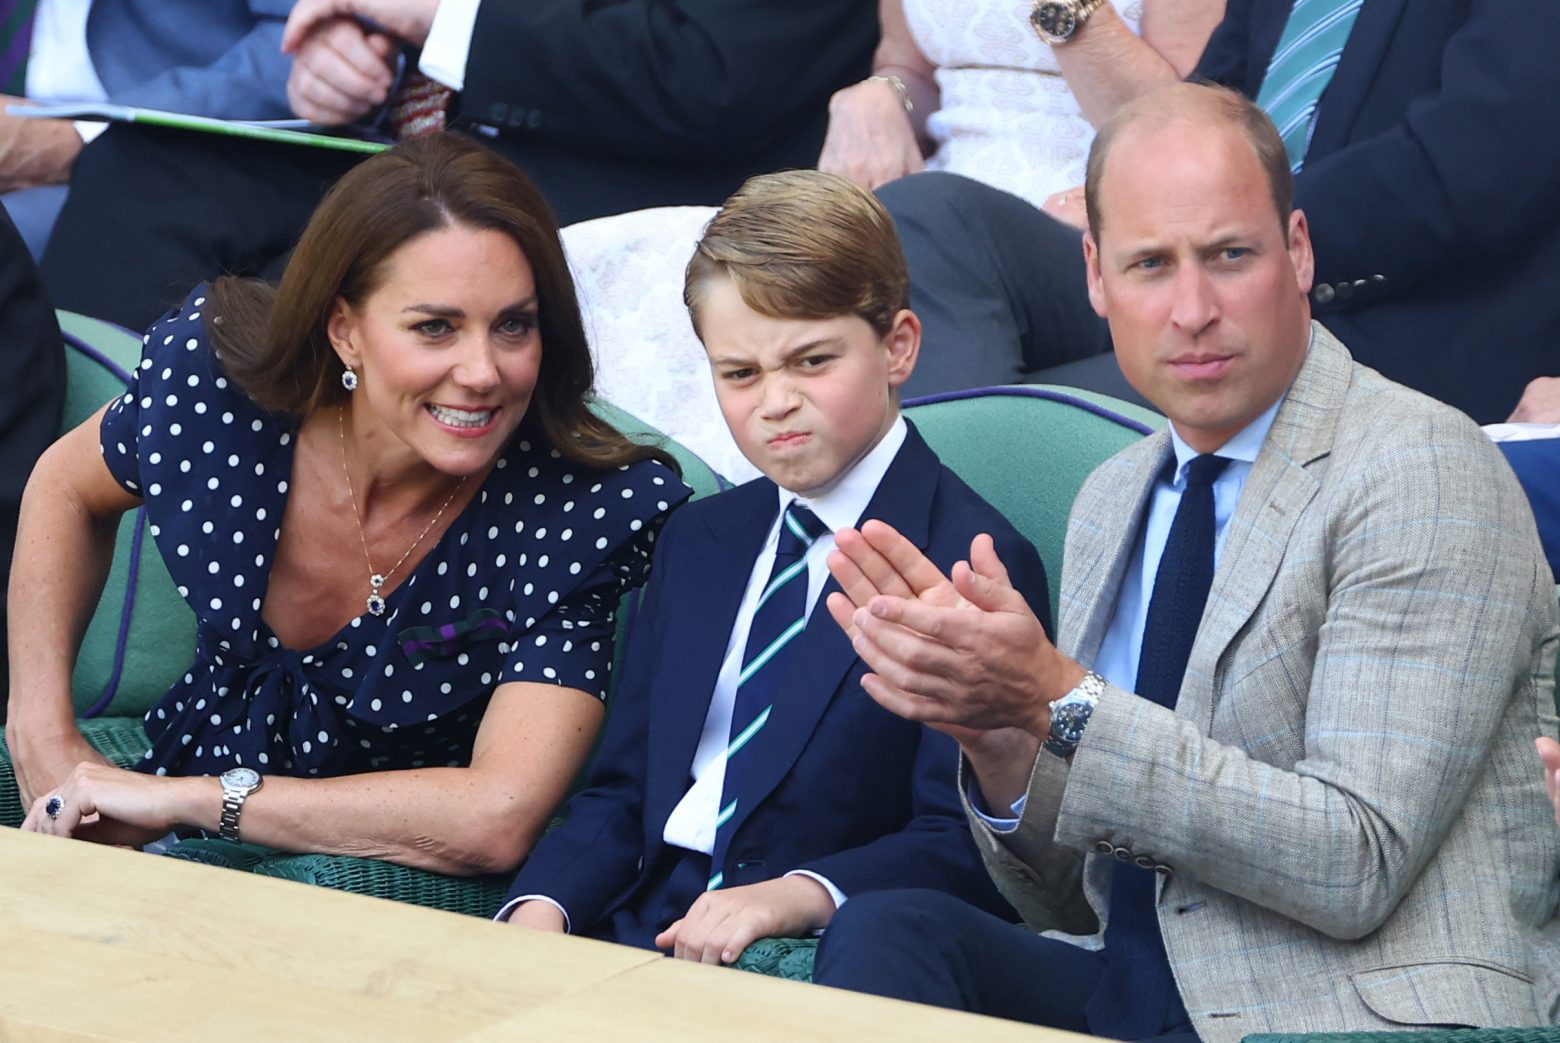 Ο πρίγκιπας Τζορτζ με κοστούμι στον τελικό Wimbledon - Η απίθανη γκριμάτσα του